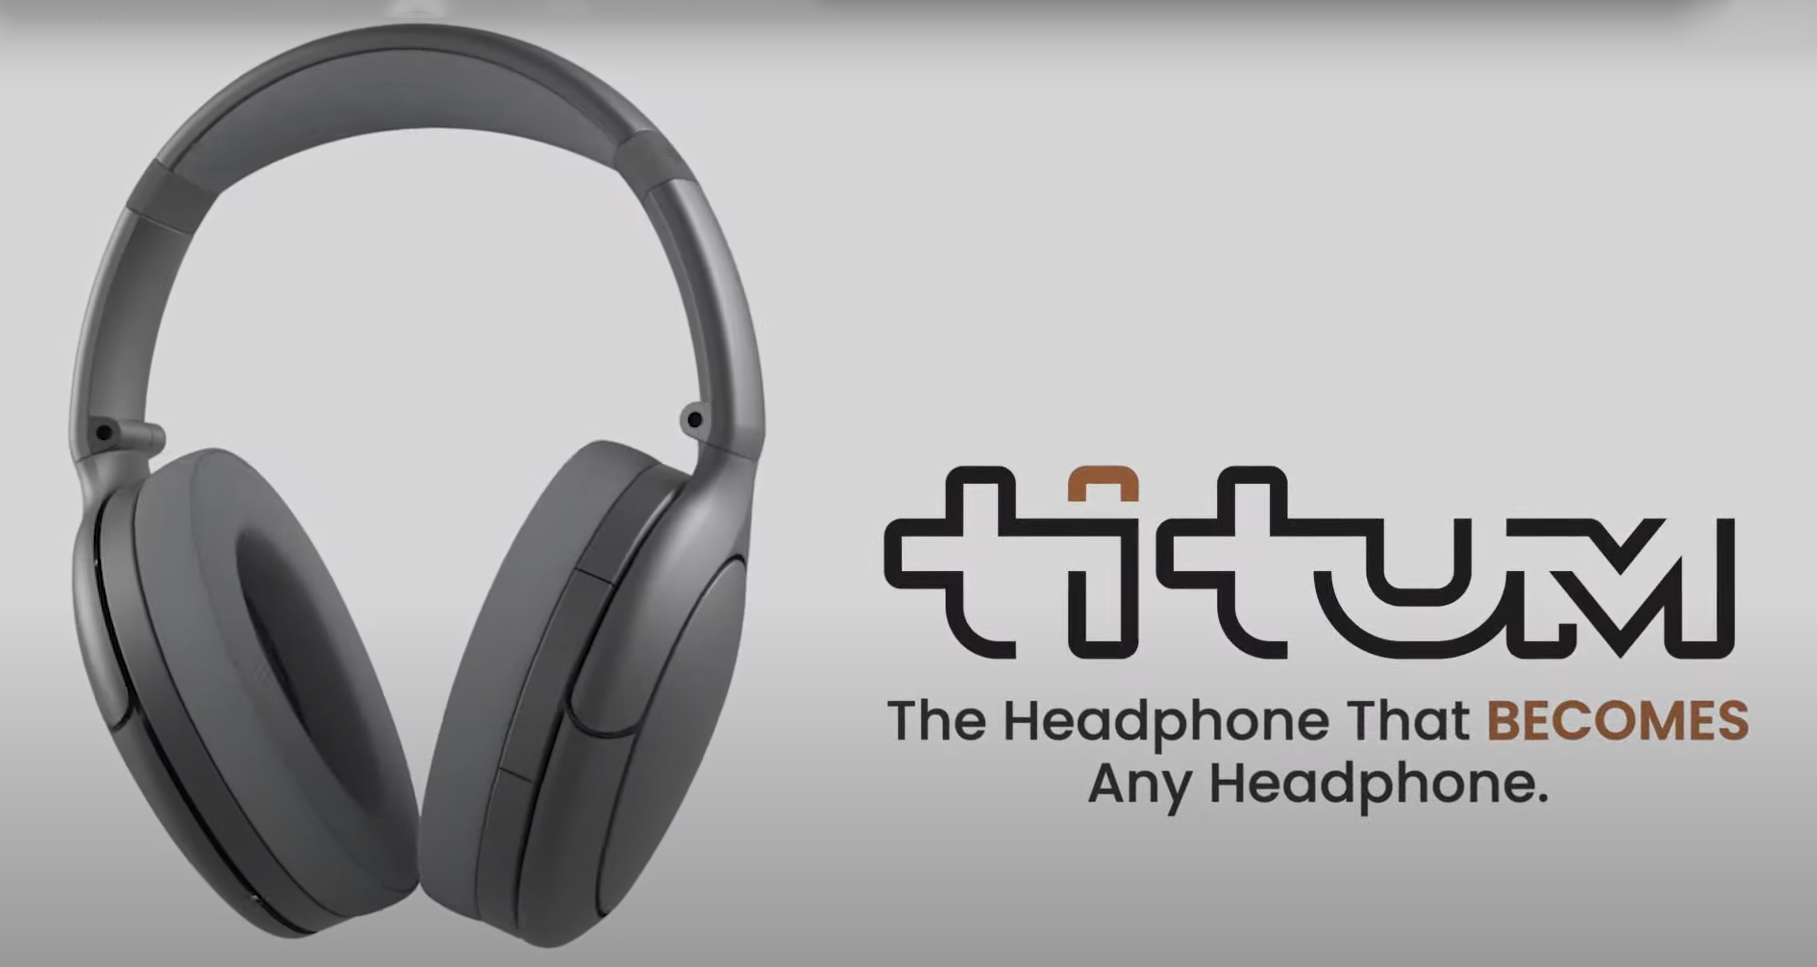 Một chiếc tai nghe thần kì giúp bạn có thể nghe được chất âm của bất cứ tai nghe nào trên thế giới, có thật không?